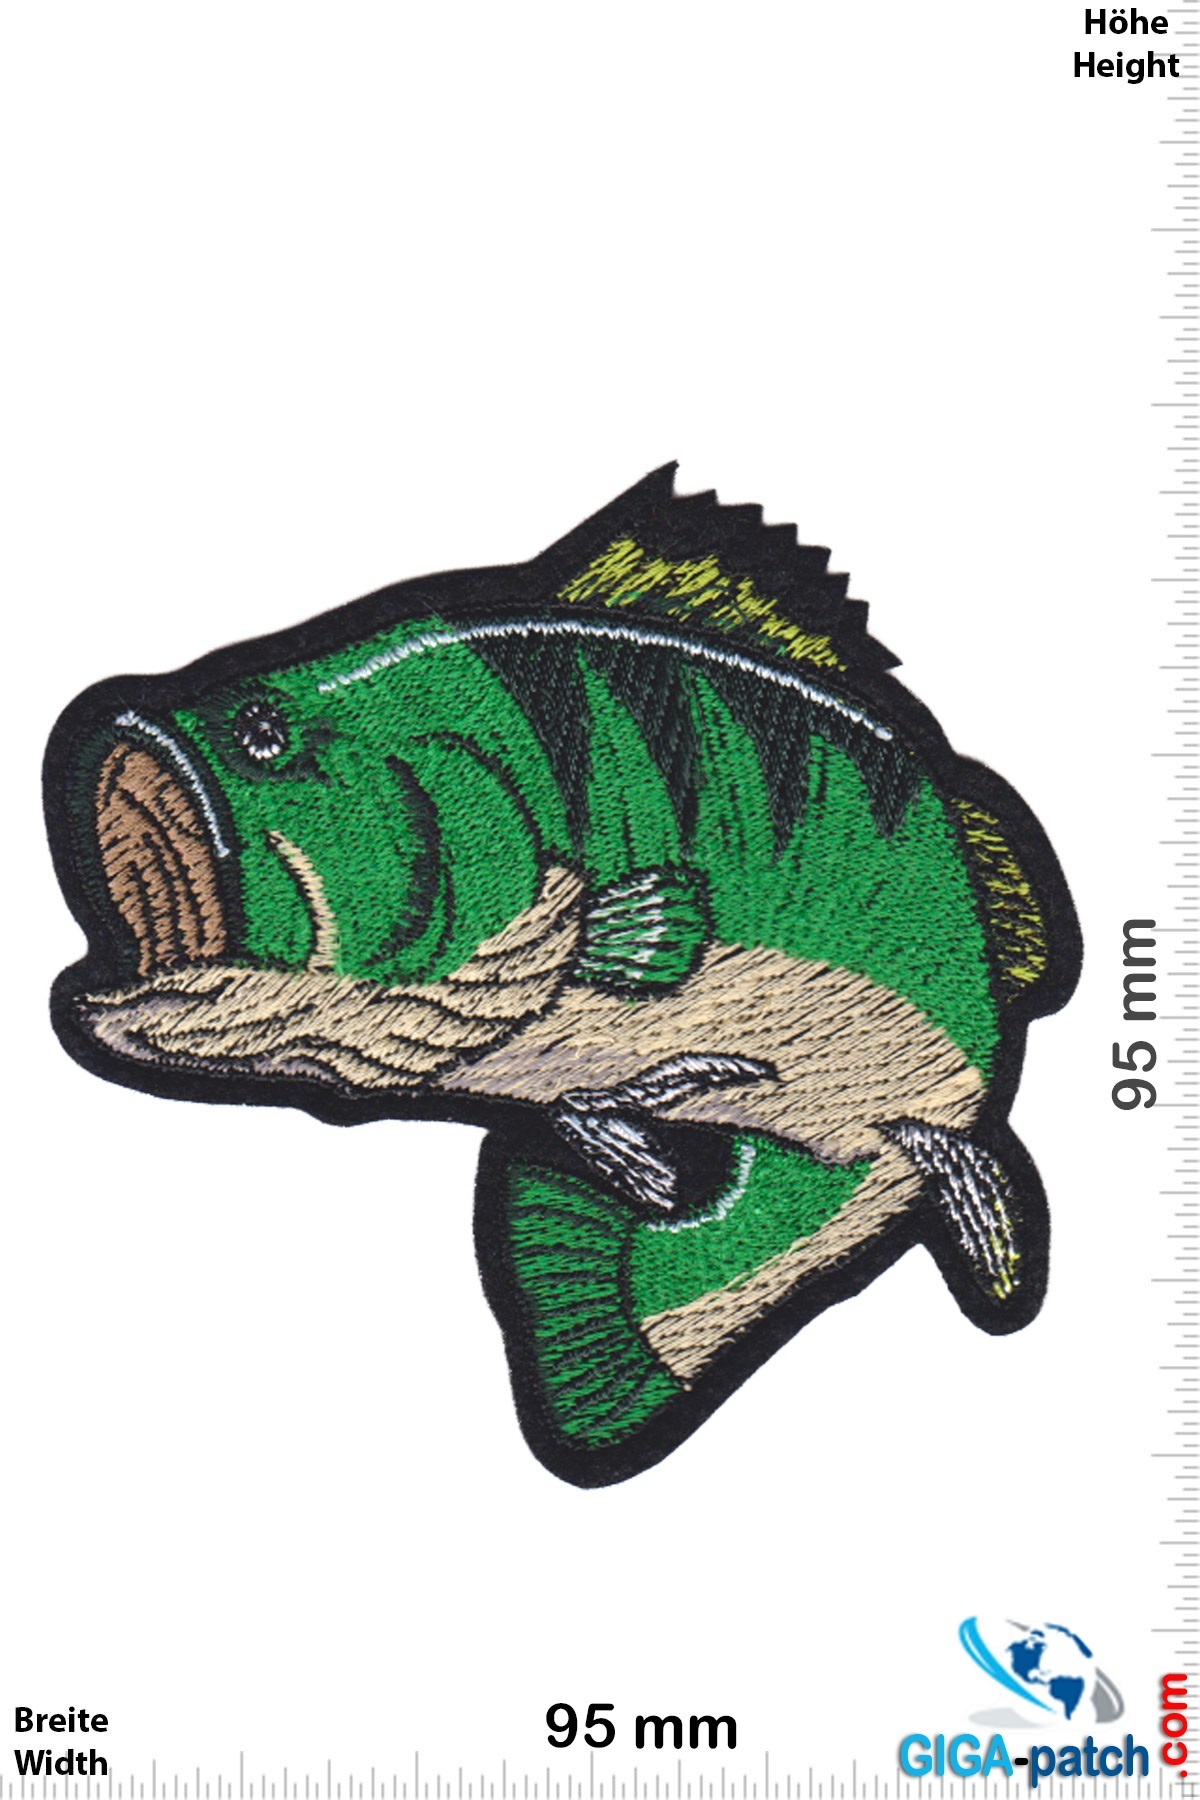 Fisch Perch - fishing fish - green